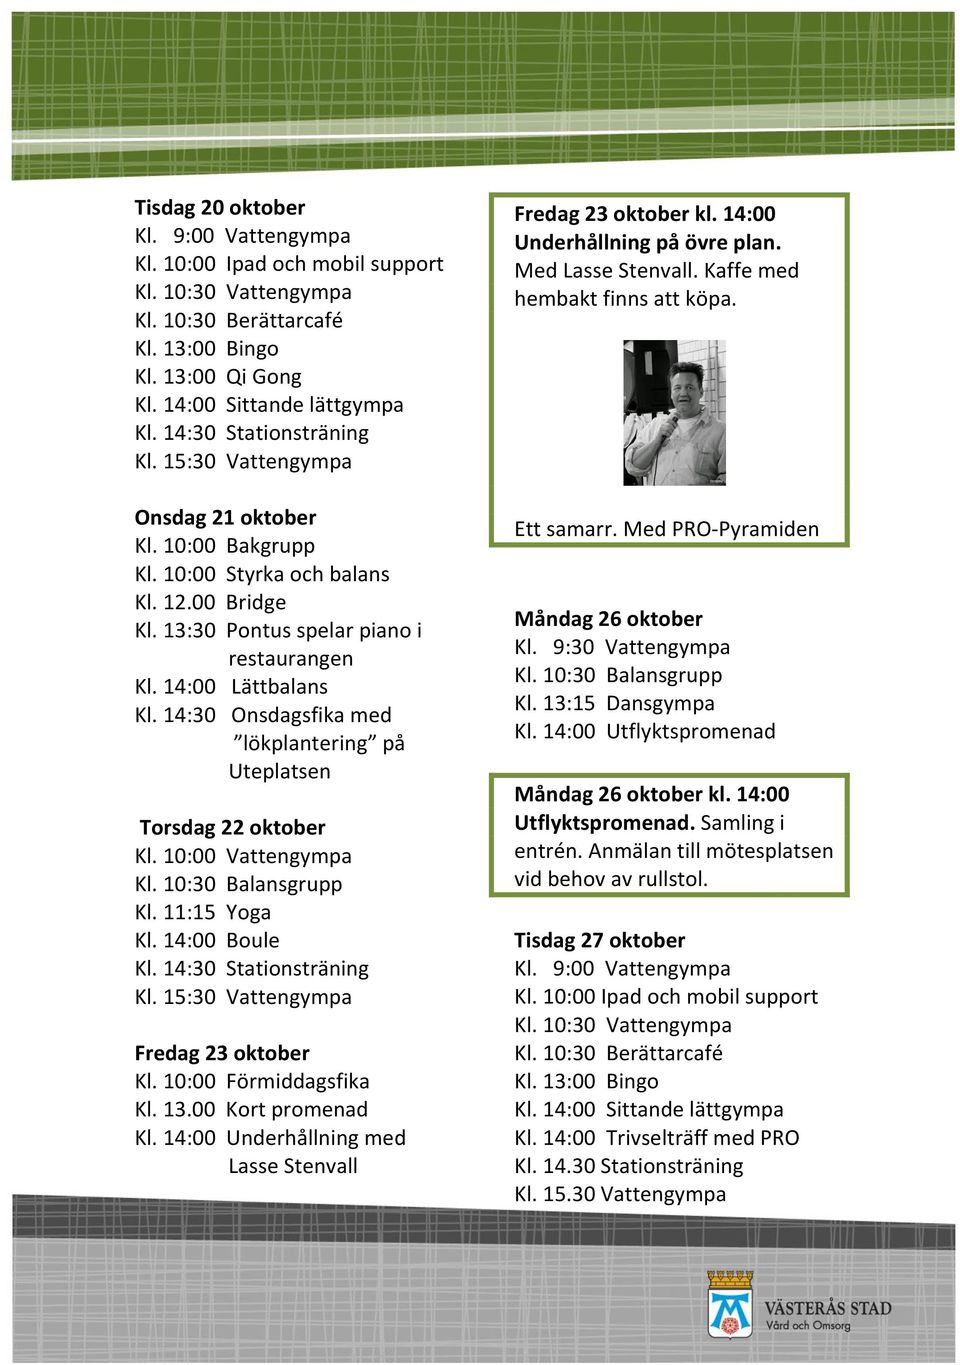 14:30 Onsdagsfika med lökplantering på Uteplatsen Torsdag 22 oktober Fredag 23 oktober Kl. 14:00 Underhållning med Lasse Stenvall Fredag 23 oktober kl. 14:00 Underhållning på övre plan.